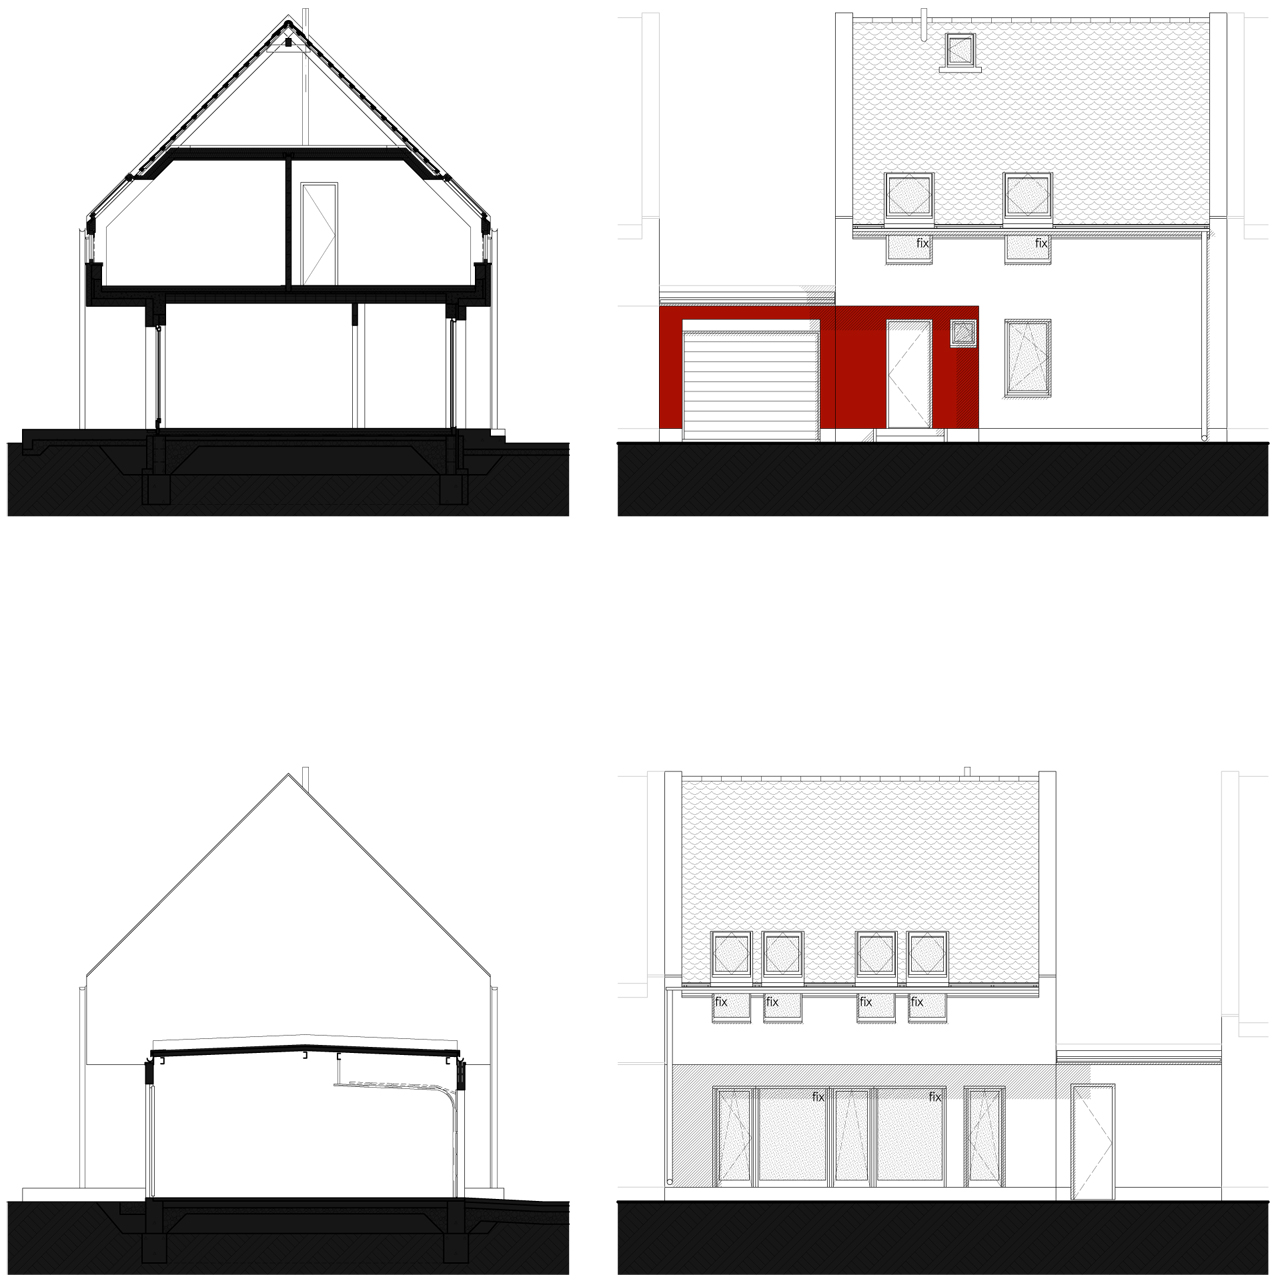 tervezett metszetek és homlokzatok - 3 szobás változat